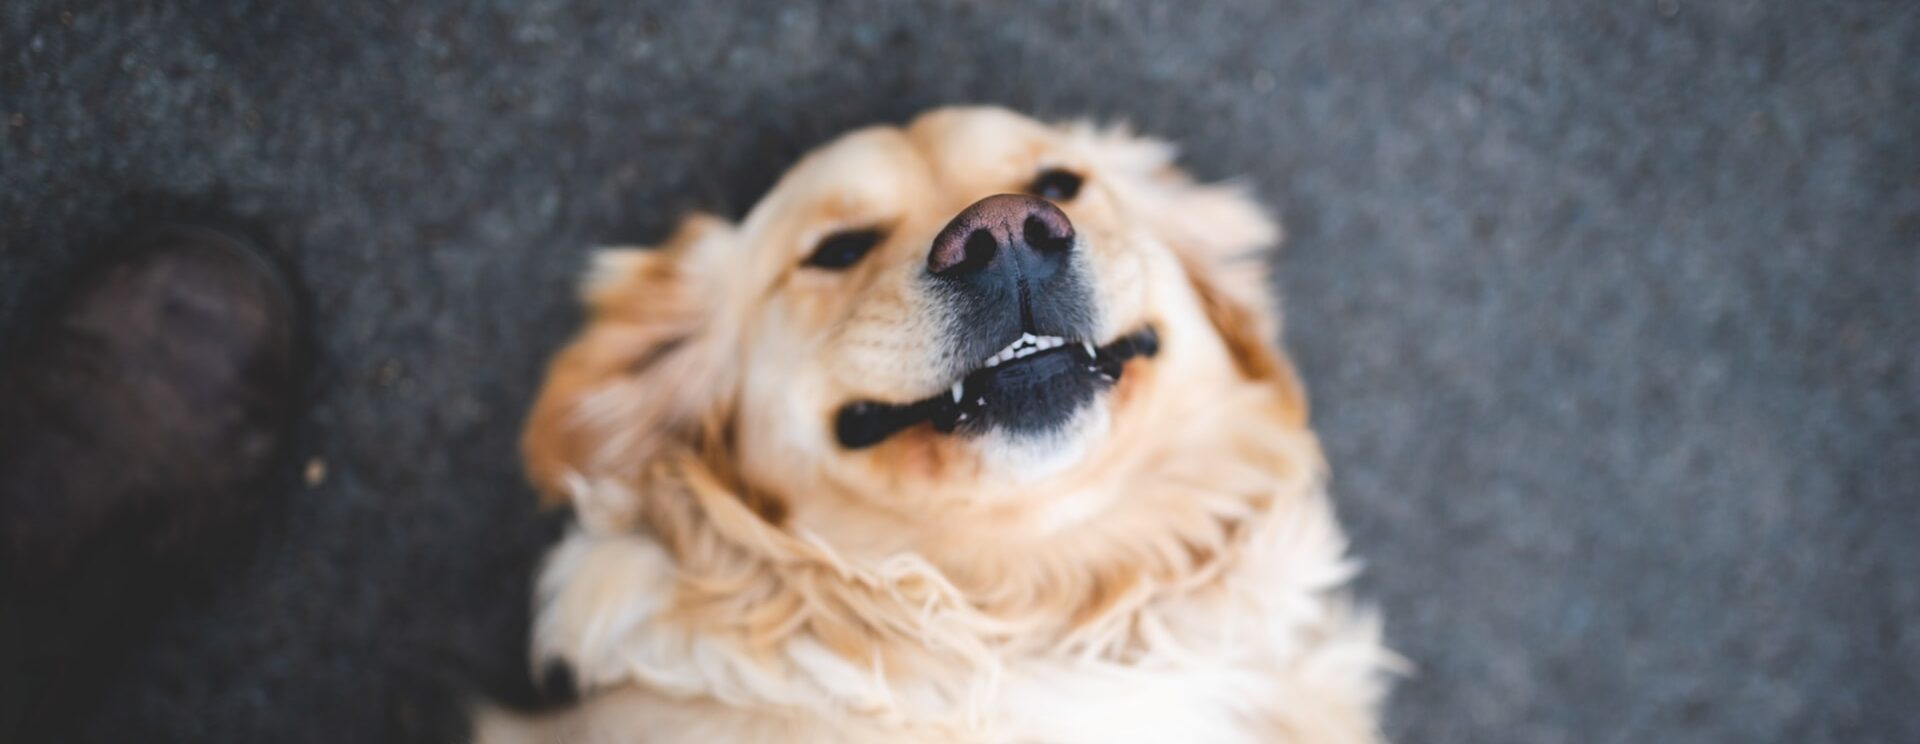 perro riendo feliz